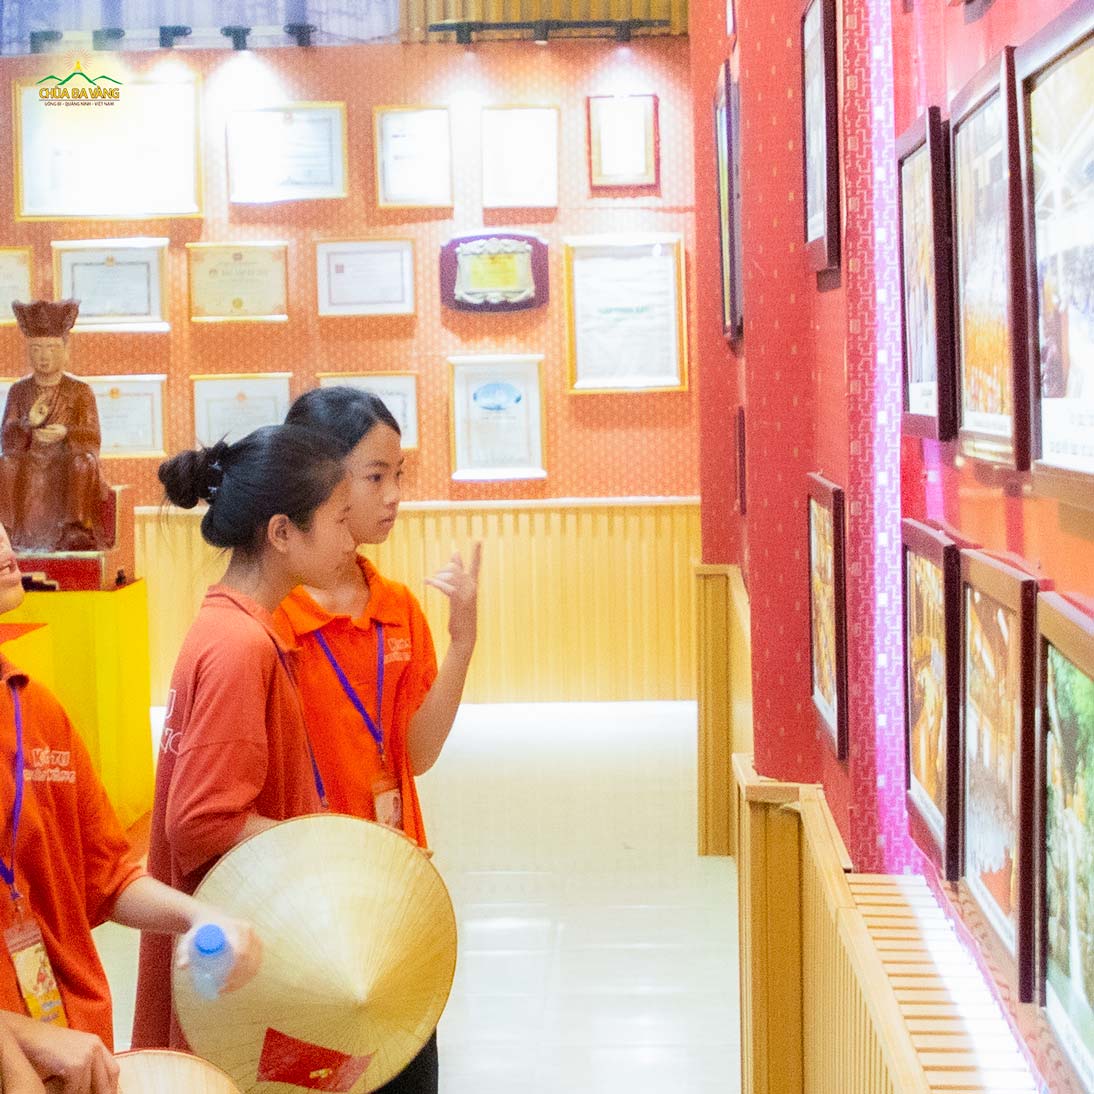 Khóa sinh Nguyễn Phương Vi (đứng phía trong cùng) chăm chú quan sát những bức tranh trong bảo tàng